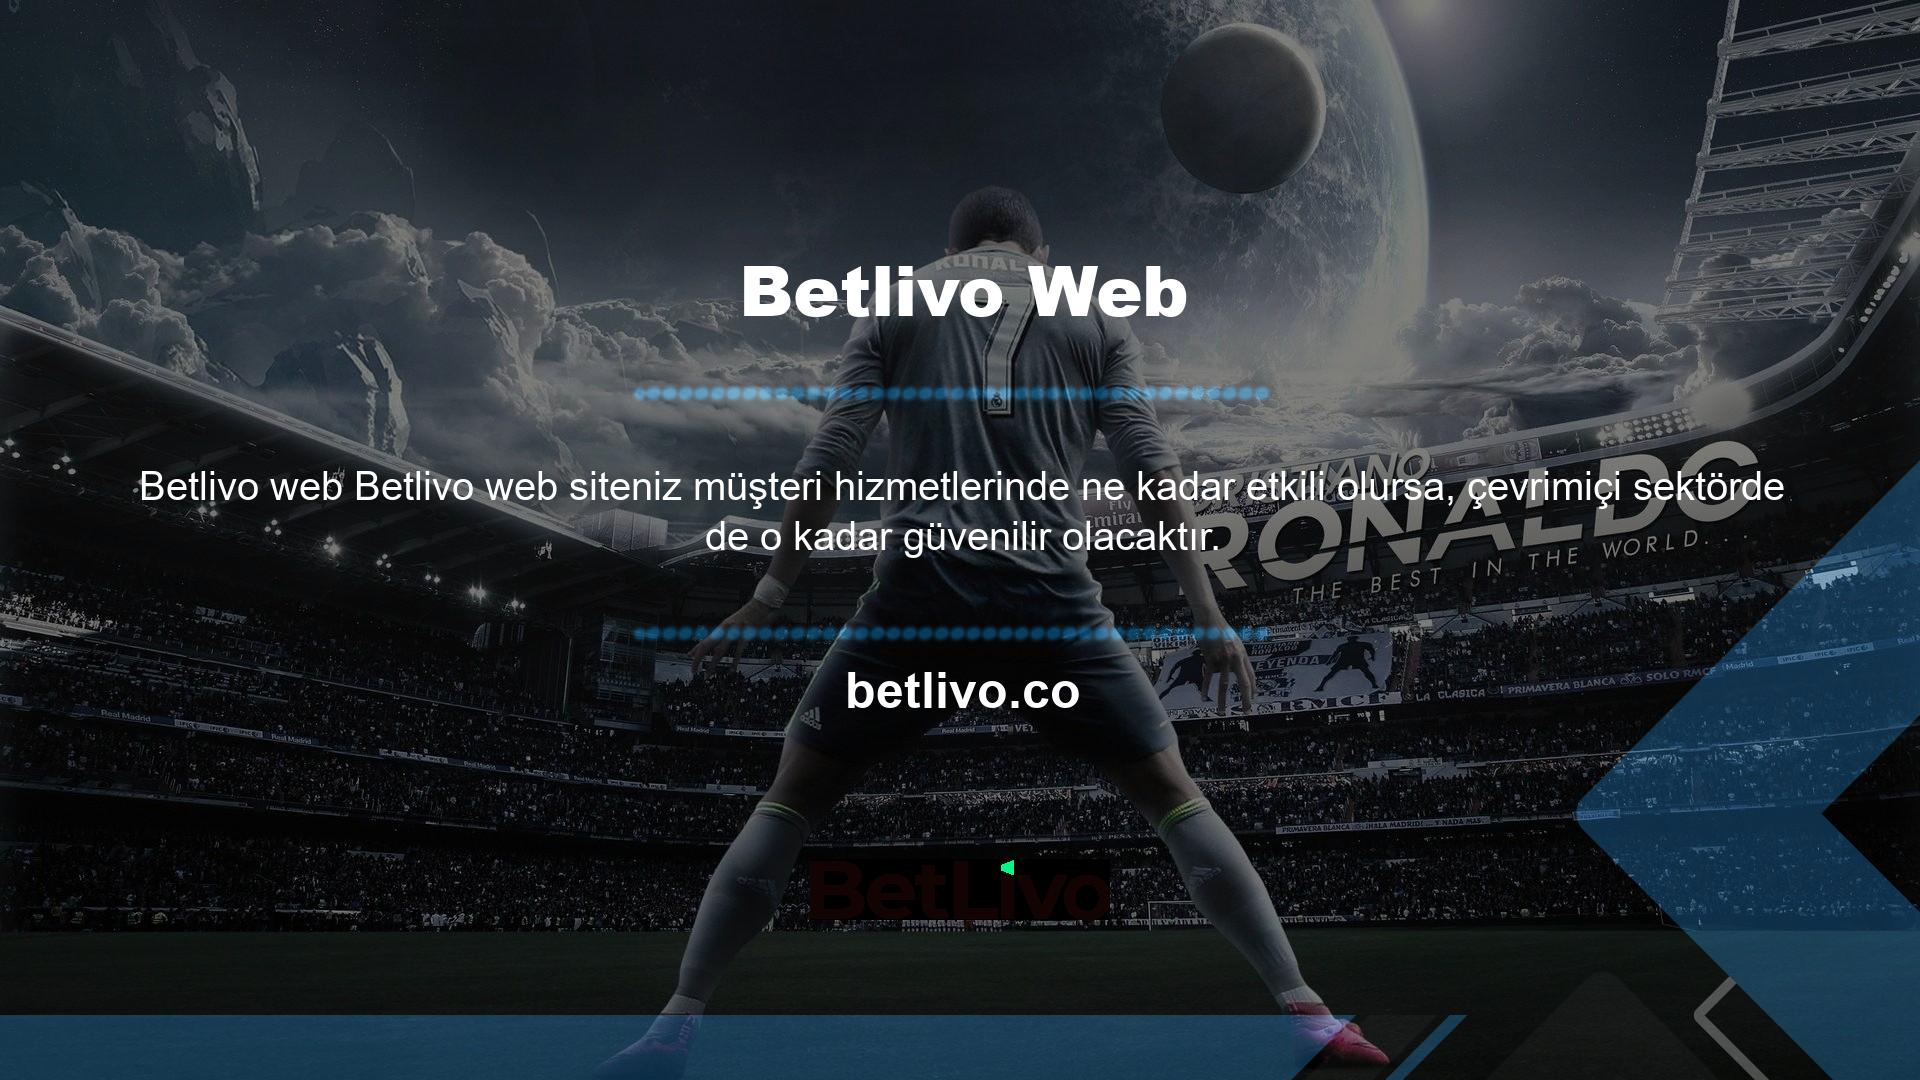 Betlivo 7/24 canlı destek hizmetleriyle sektörde güvenilen biri olmaya çalışmaktadır